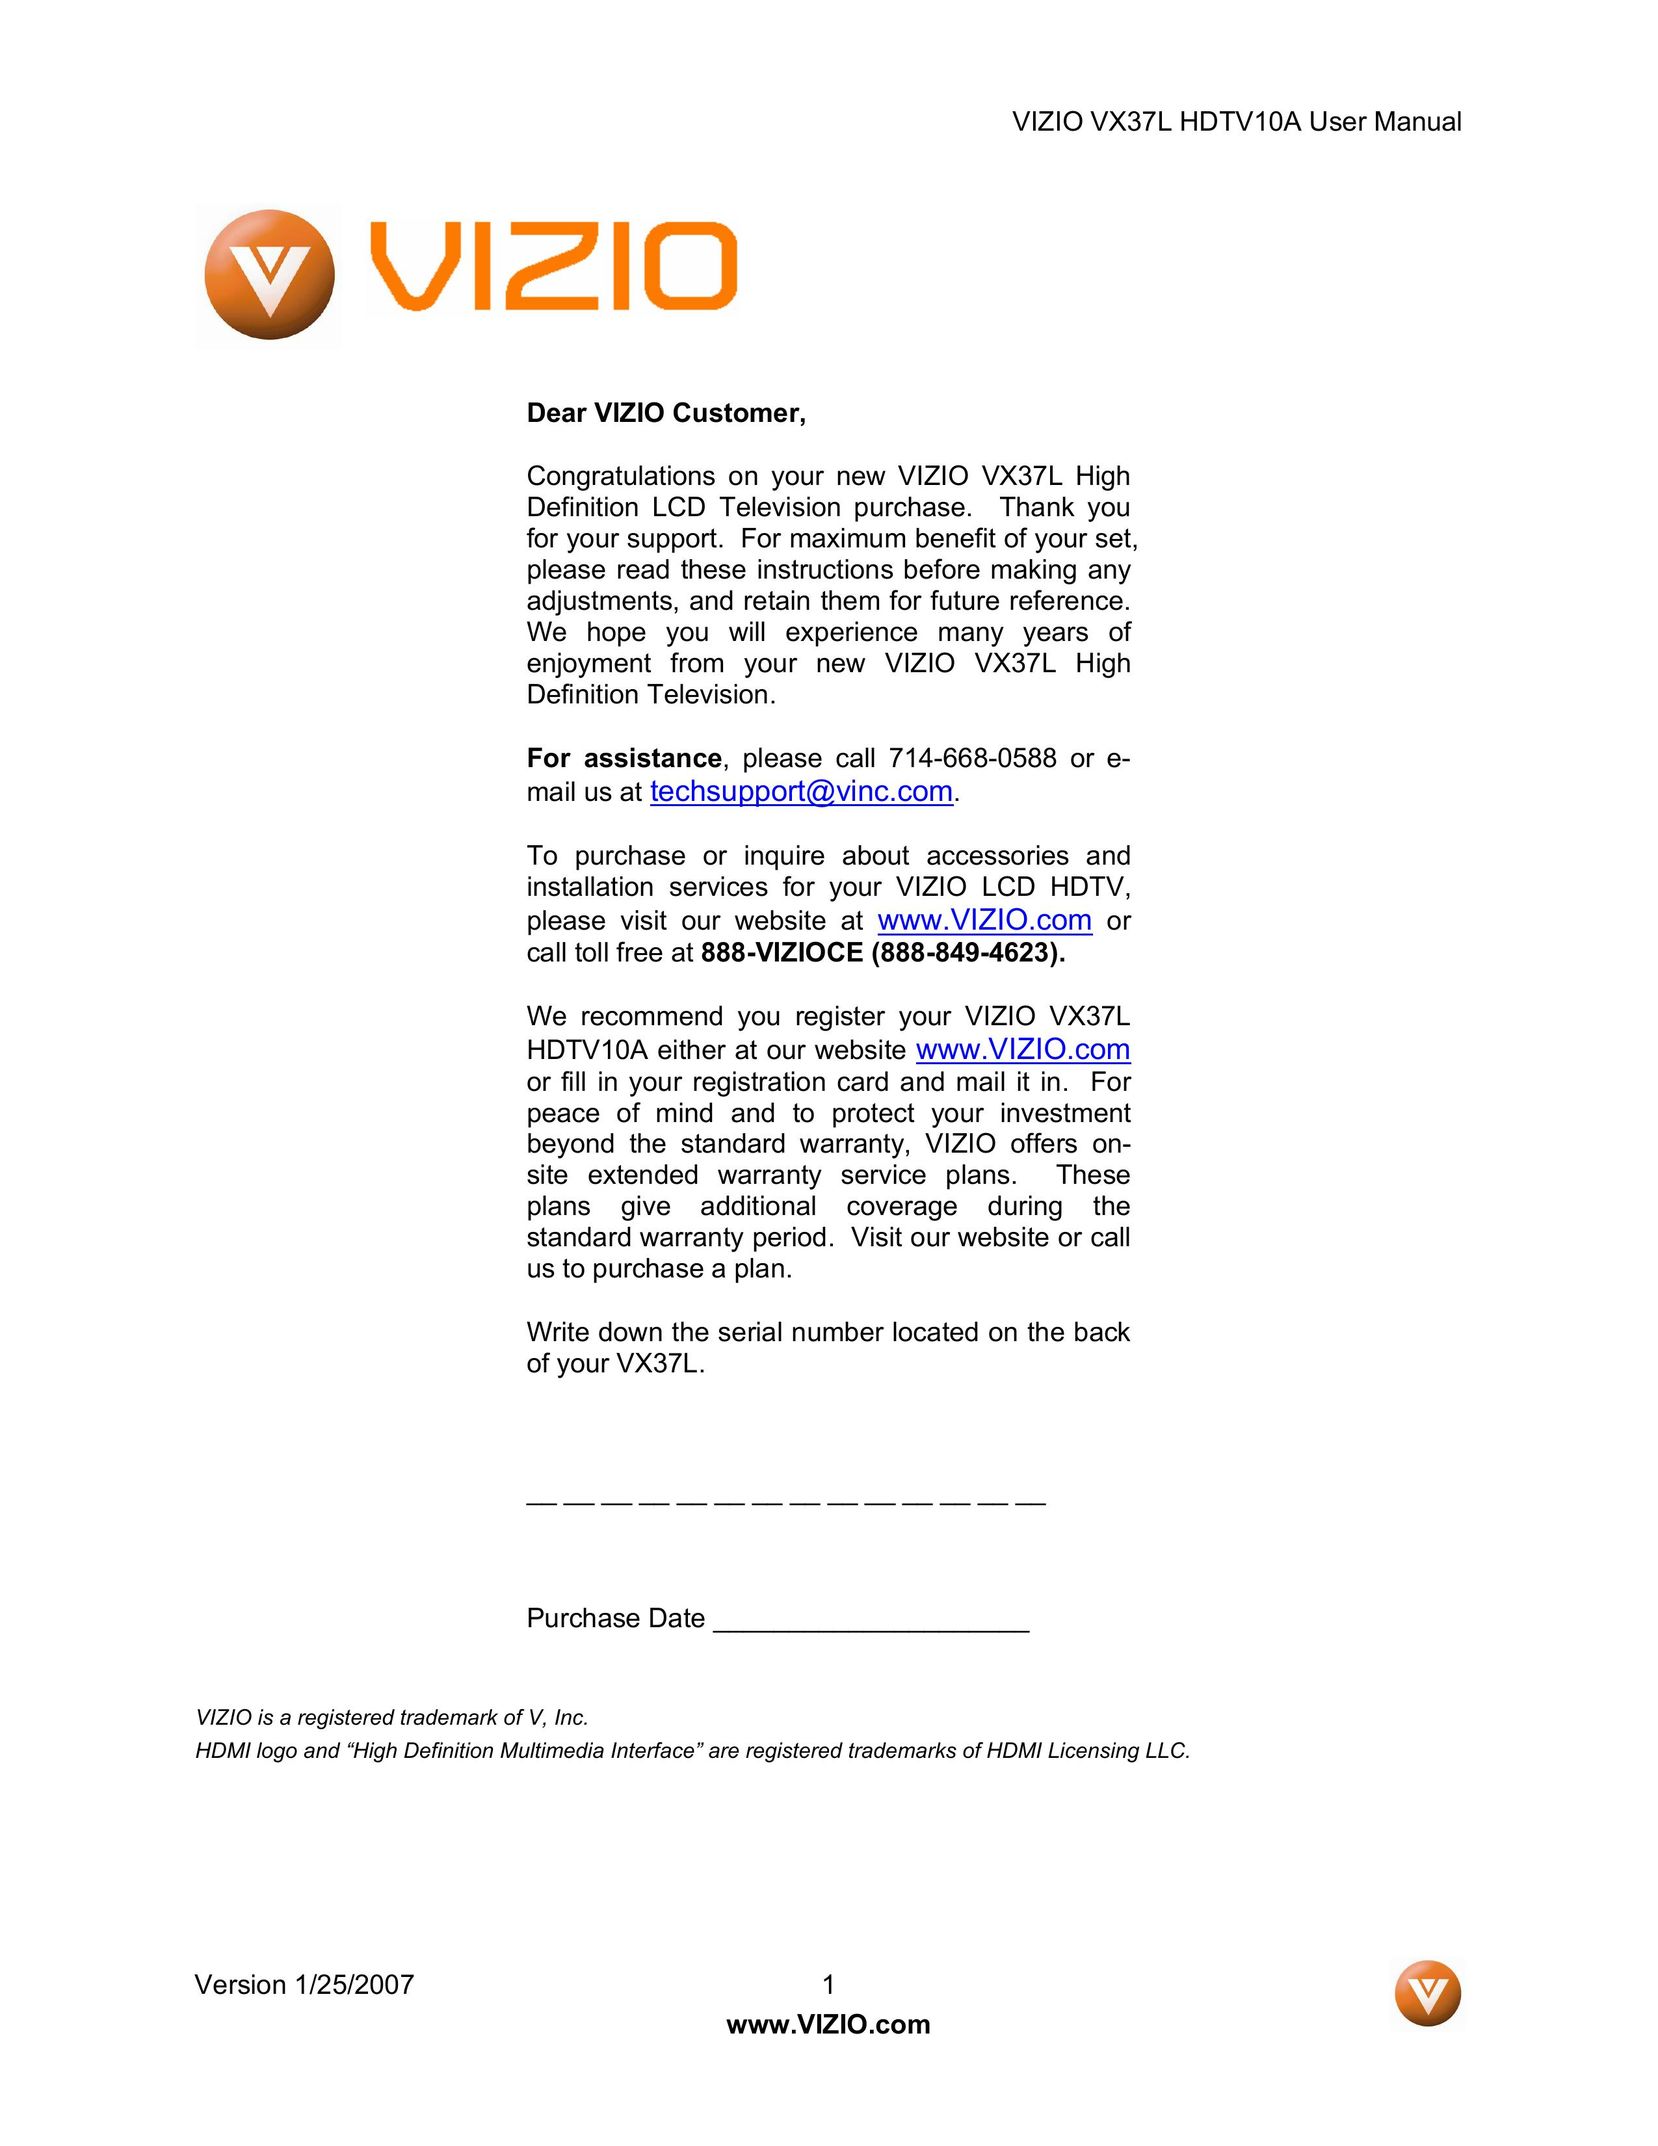 Vizio HDTV10A Universal Remote User Manual